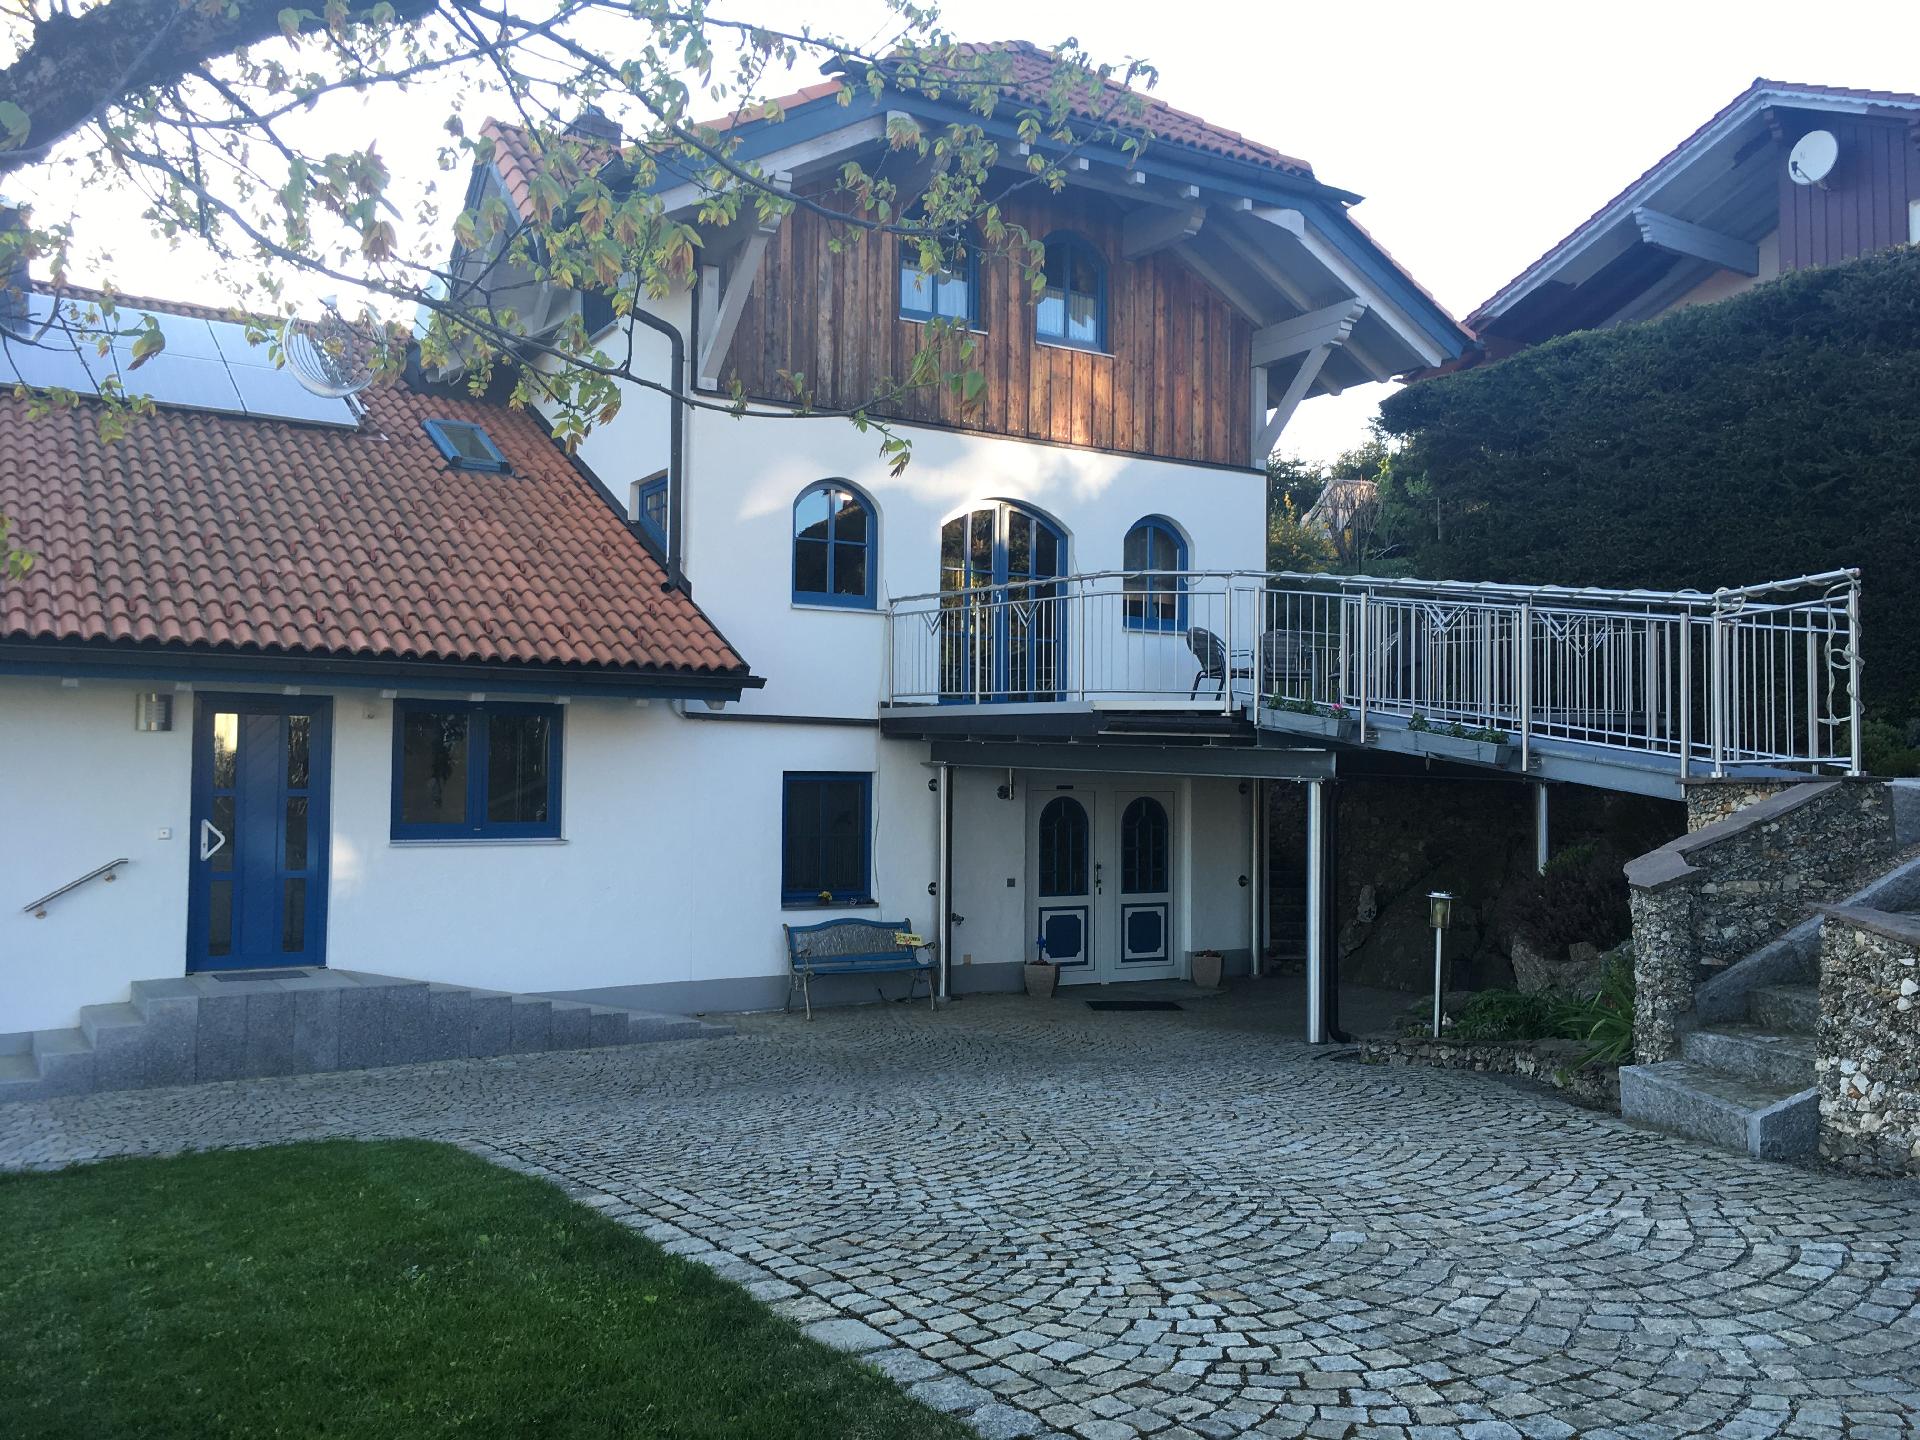 Ferienwohnung für 2 Personen ca. 80 m² i Ferienhaus in Europa